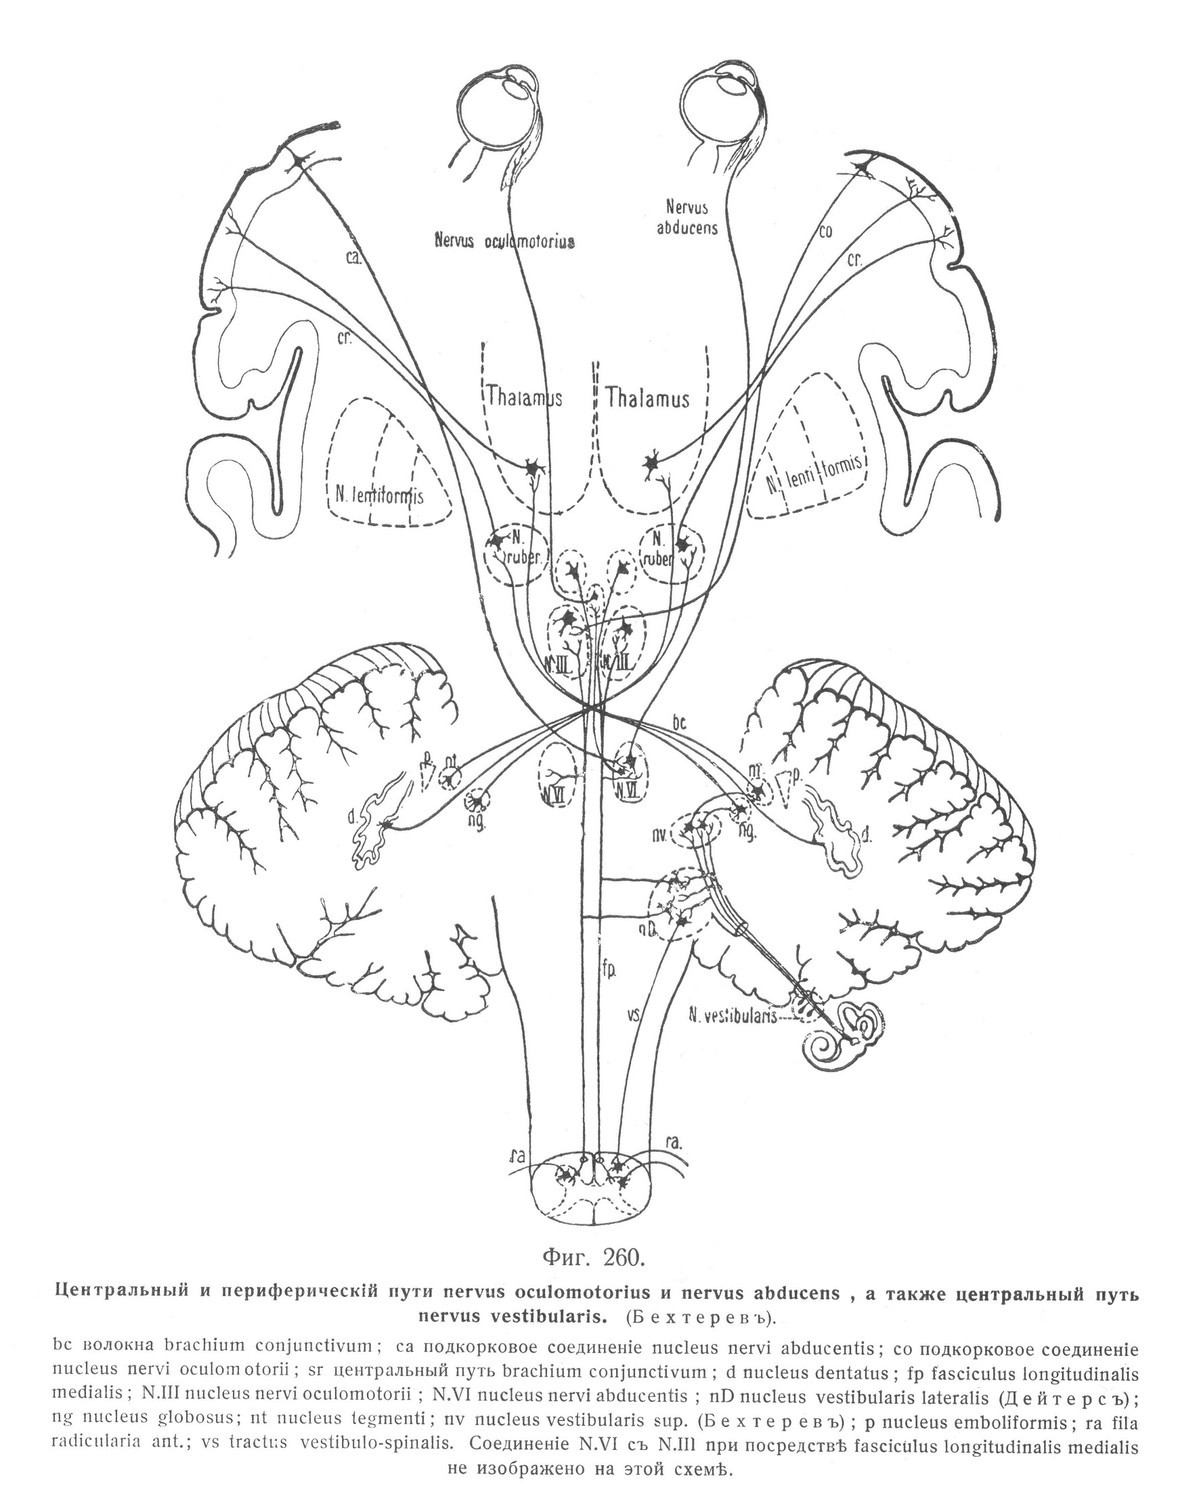 Центральный и периферическій пути nervus oculomotorius и nervus abducens, а также центральный путь nervus vestibularis. 